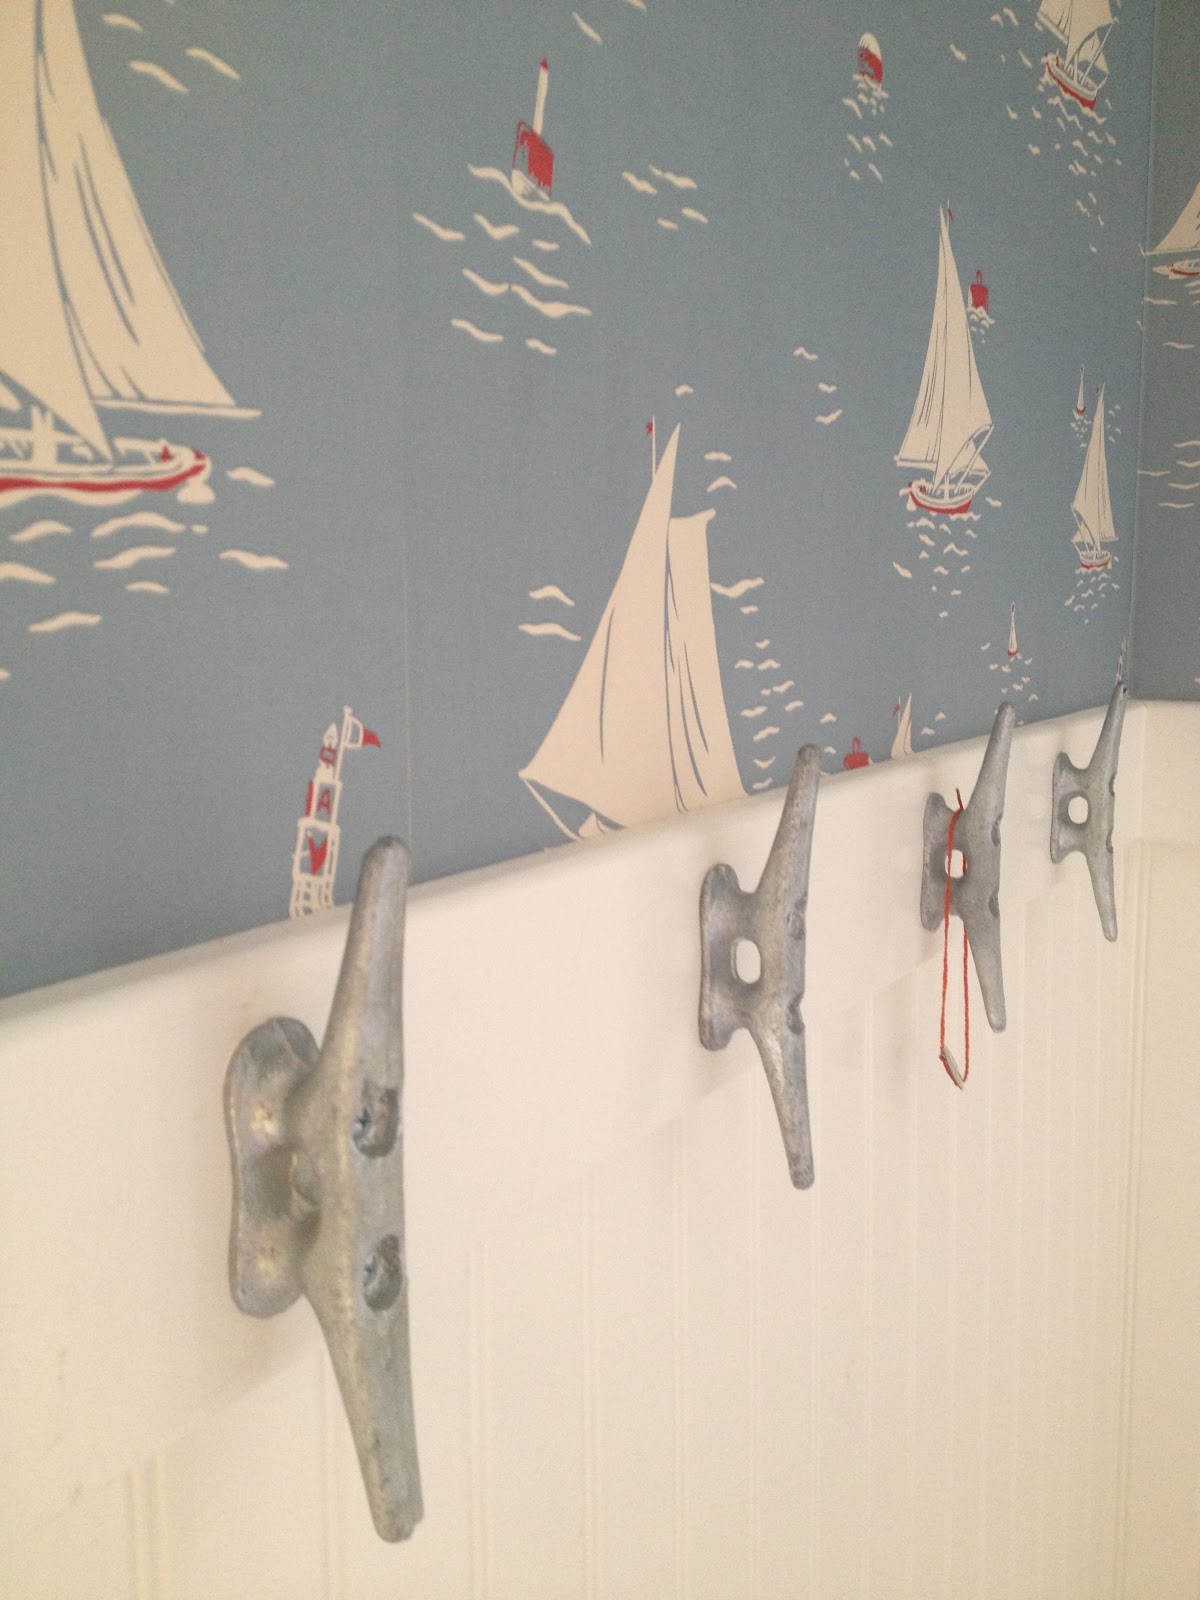 cabana bathroom wallpaper & boat cleats